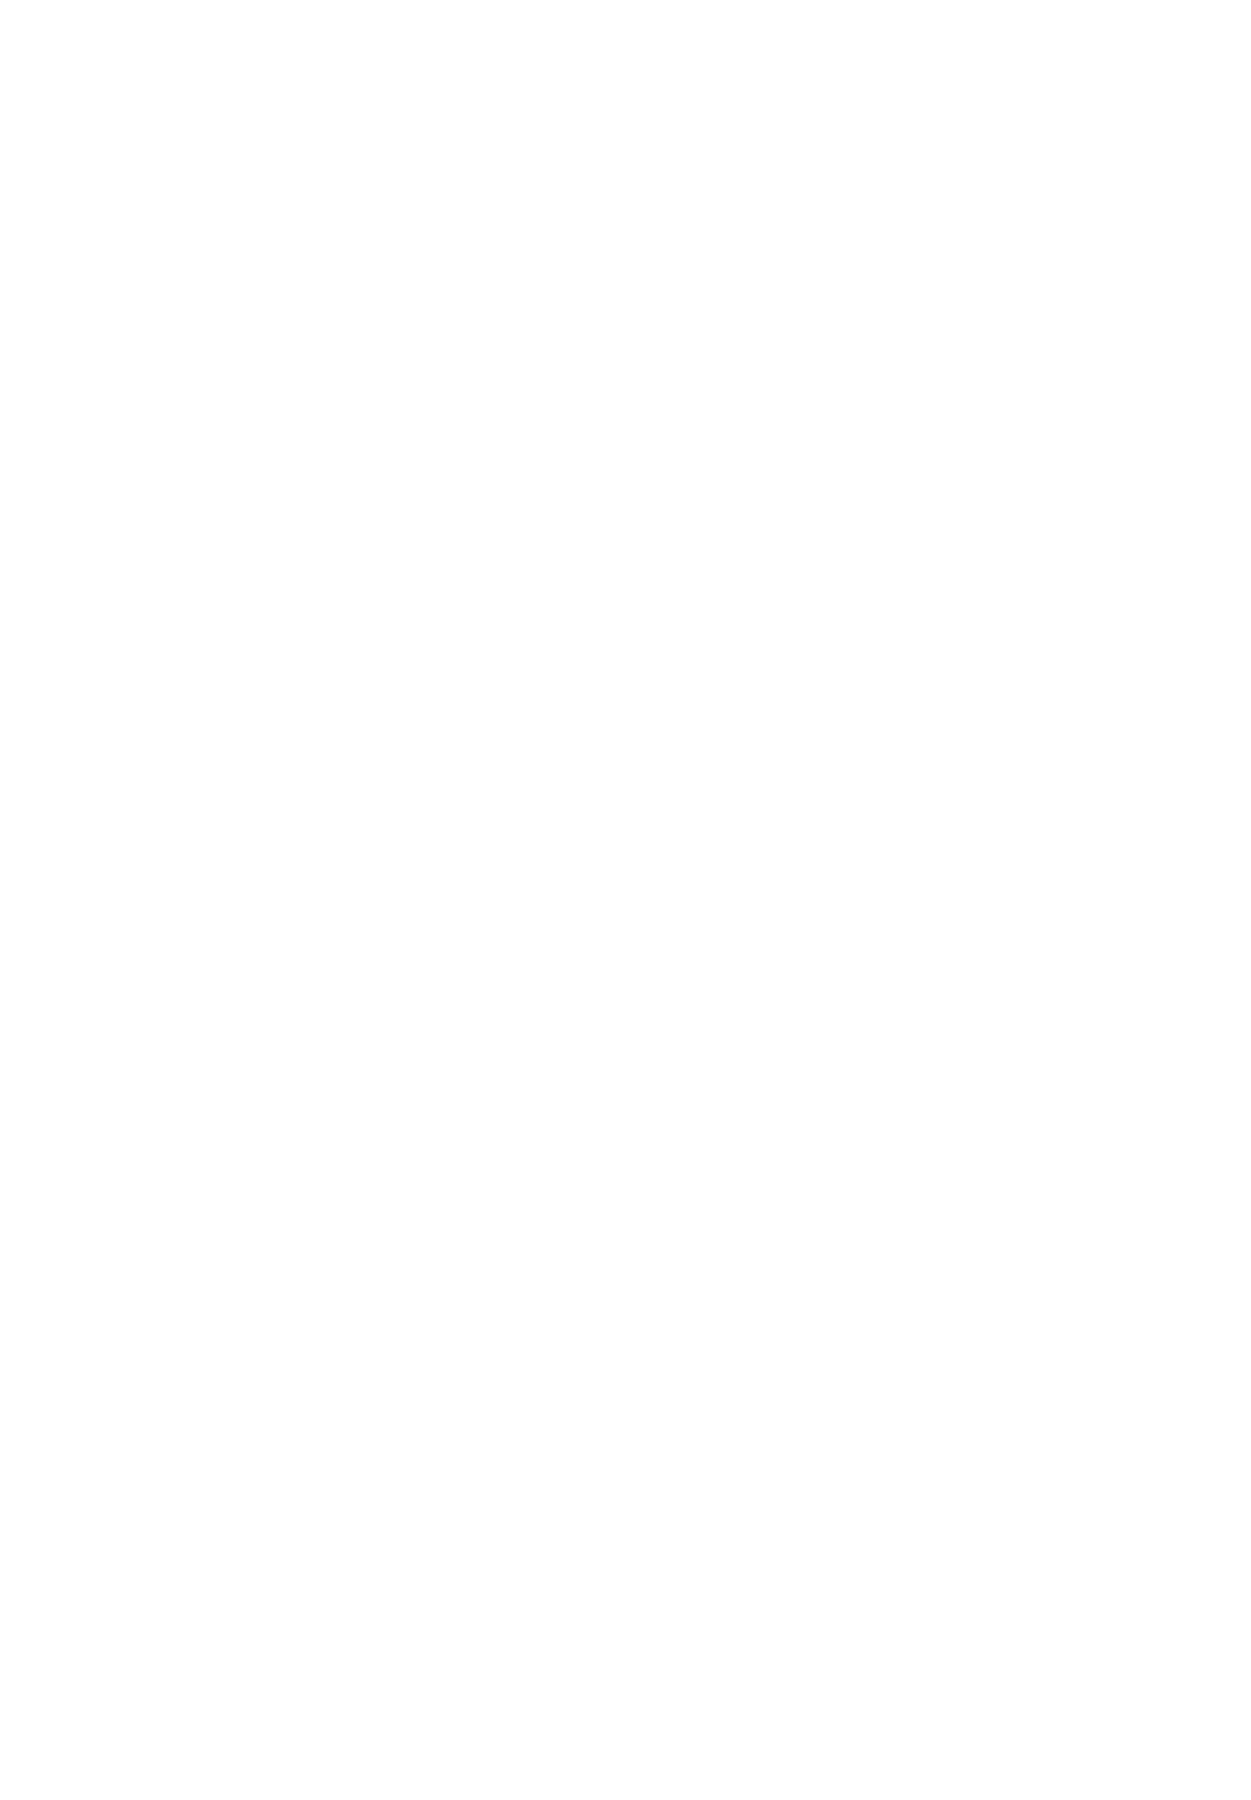 В. В. Верещагин. После удачи. Холст, масло. 1868 год. Государственный Русский музей, Санкт-Петербург